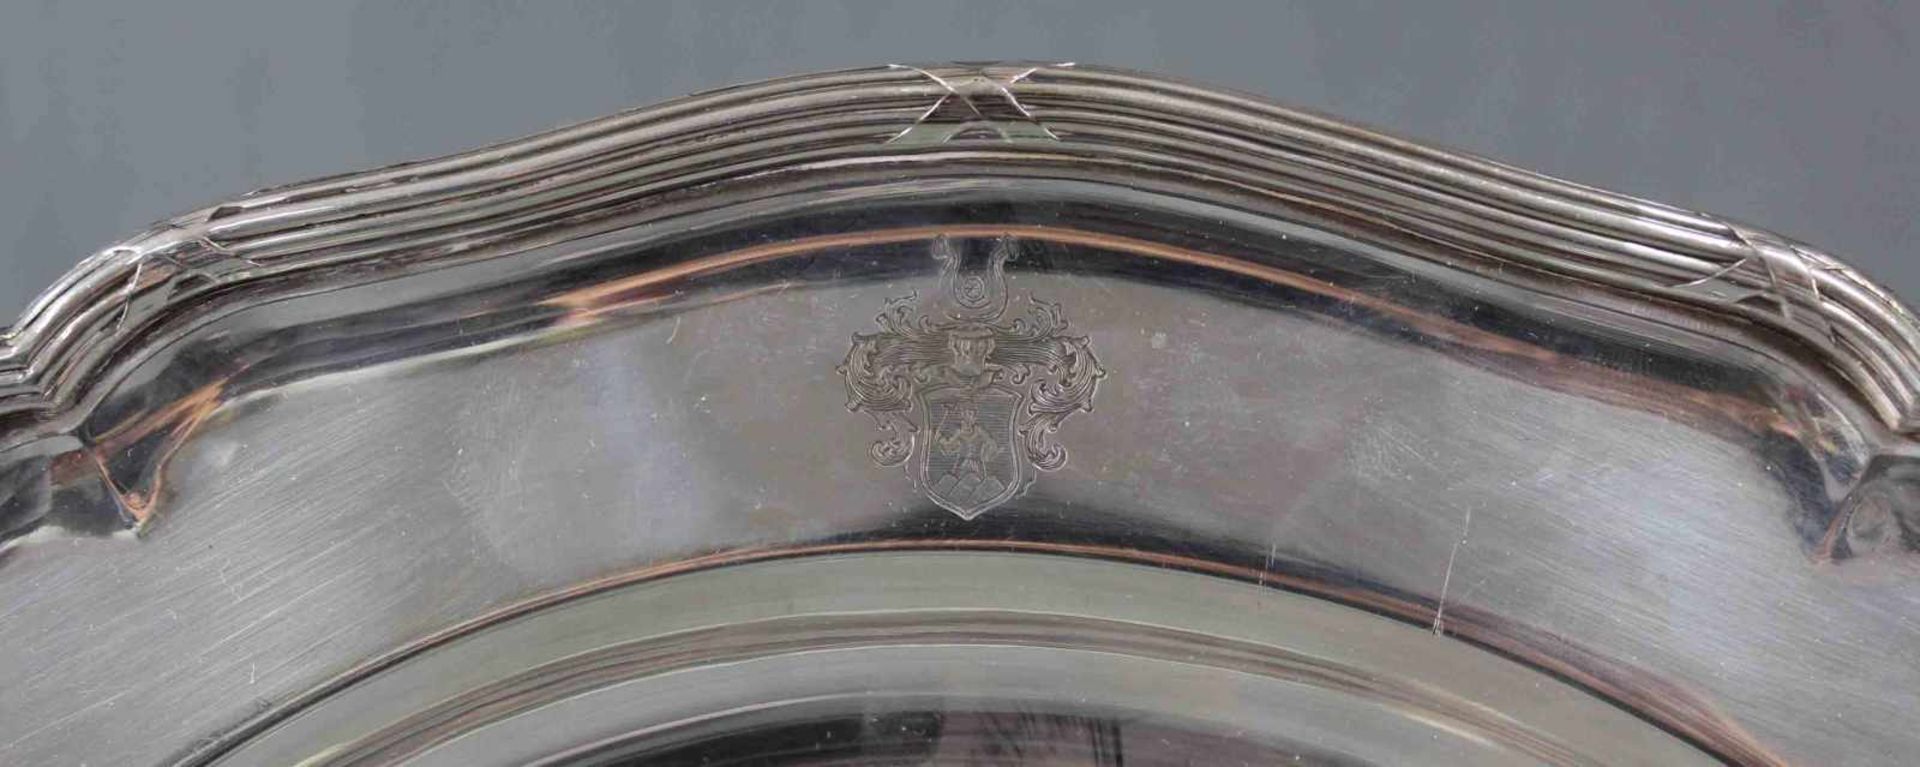 Großer Teller Wilkens, Silber 800. Hessenberg Frankfurt a. Main.1098 Gramm. Durchmesser 35 cm. Mit - Bild 2 aus 9